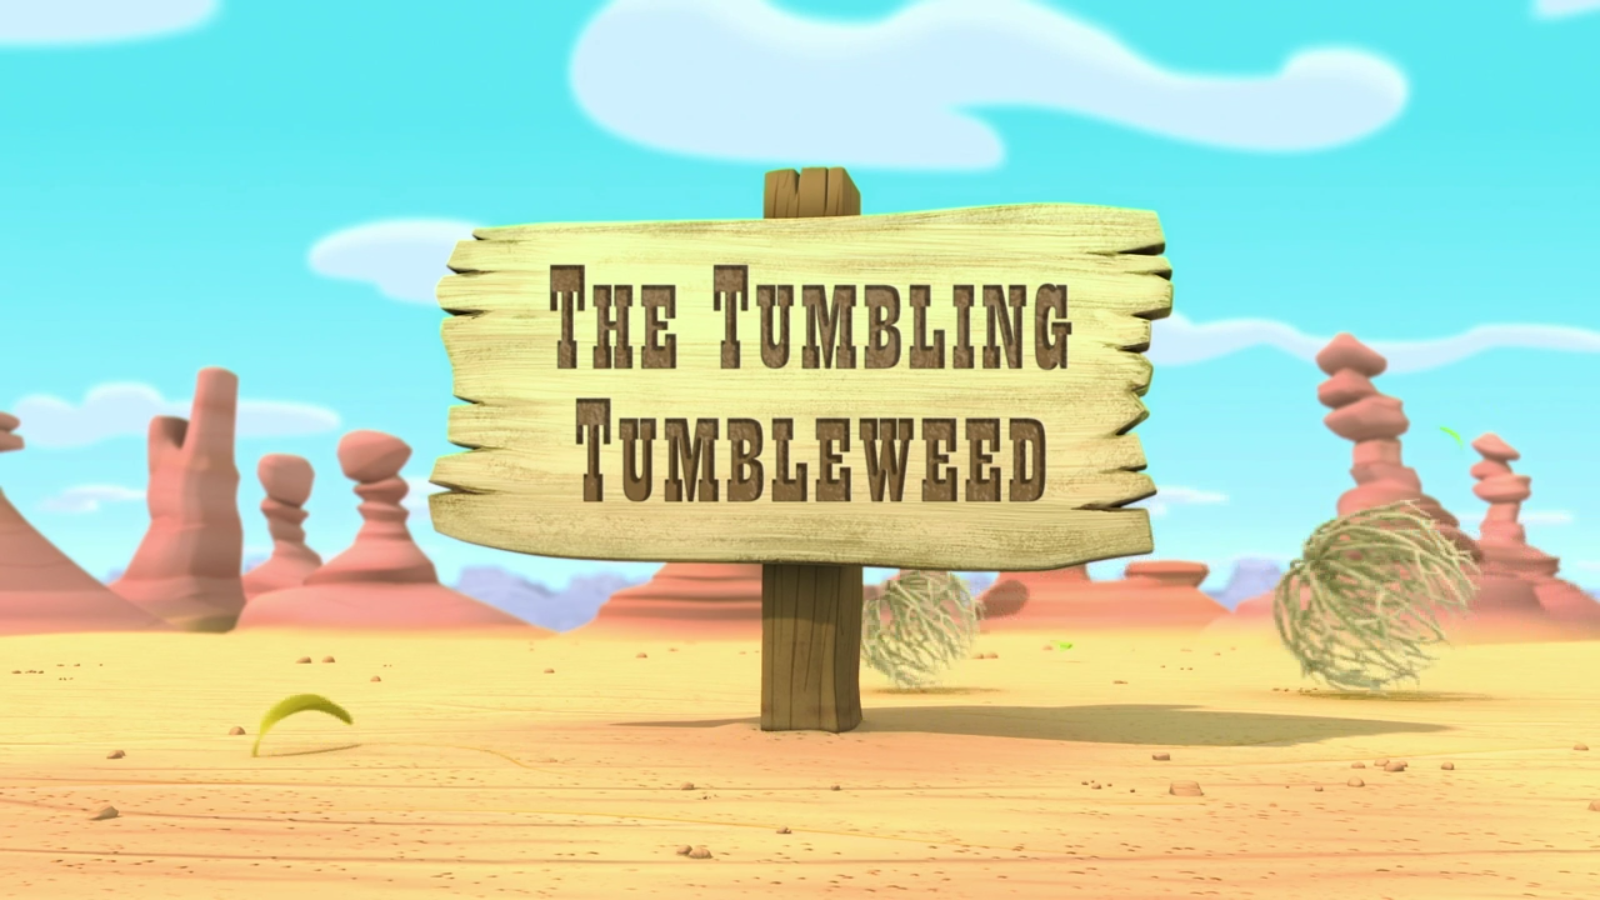 Why do tumbleweeds tumble?